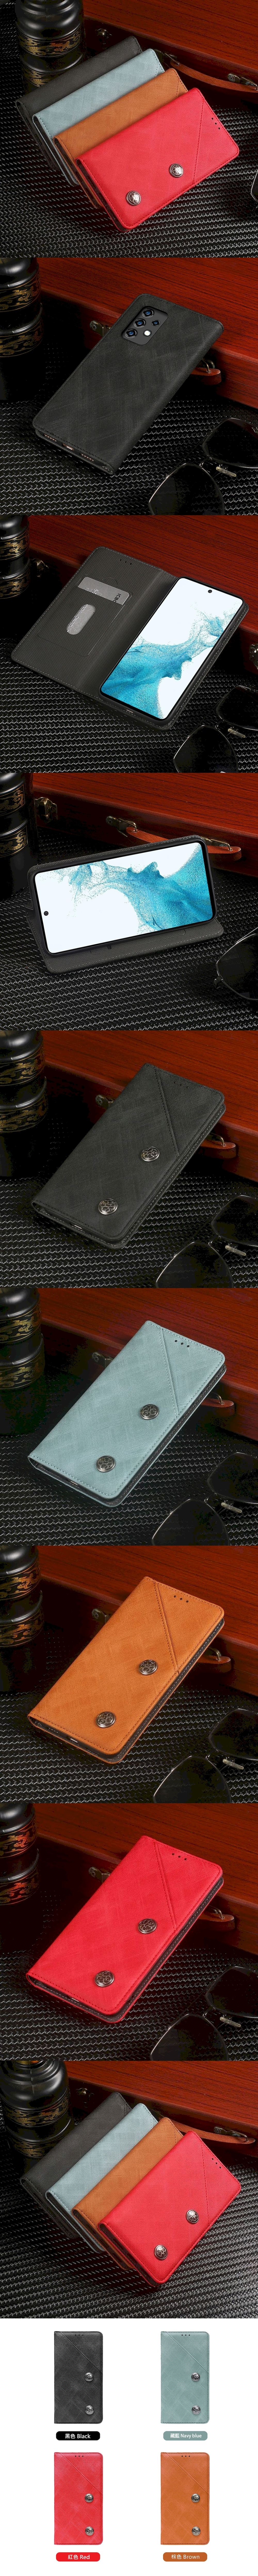 皮革保護套(MASK) - 復古隱藏微磁扣設計翻蓋式皮套